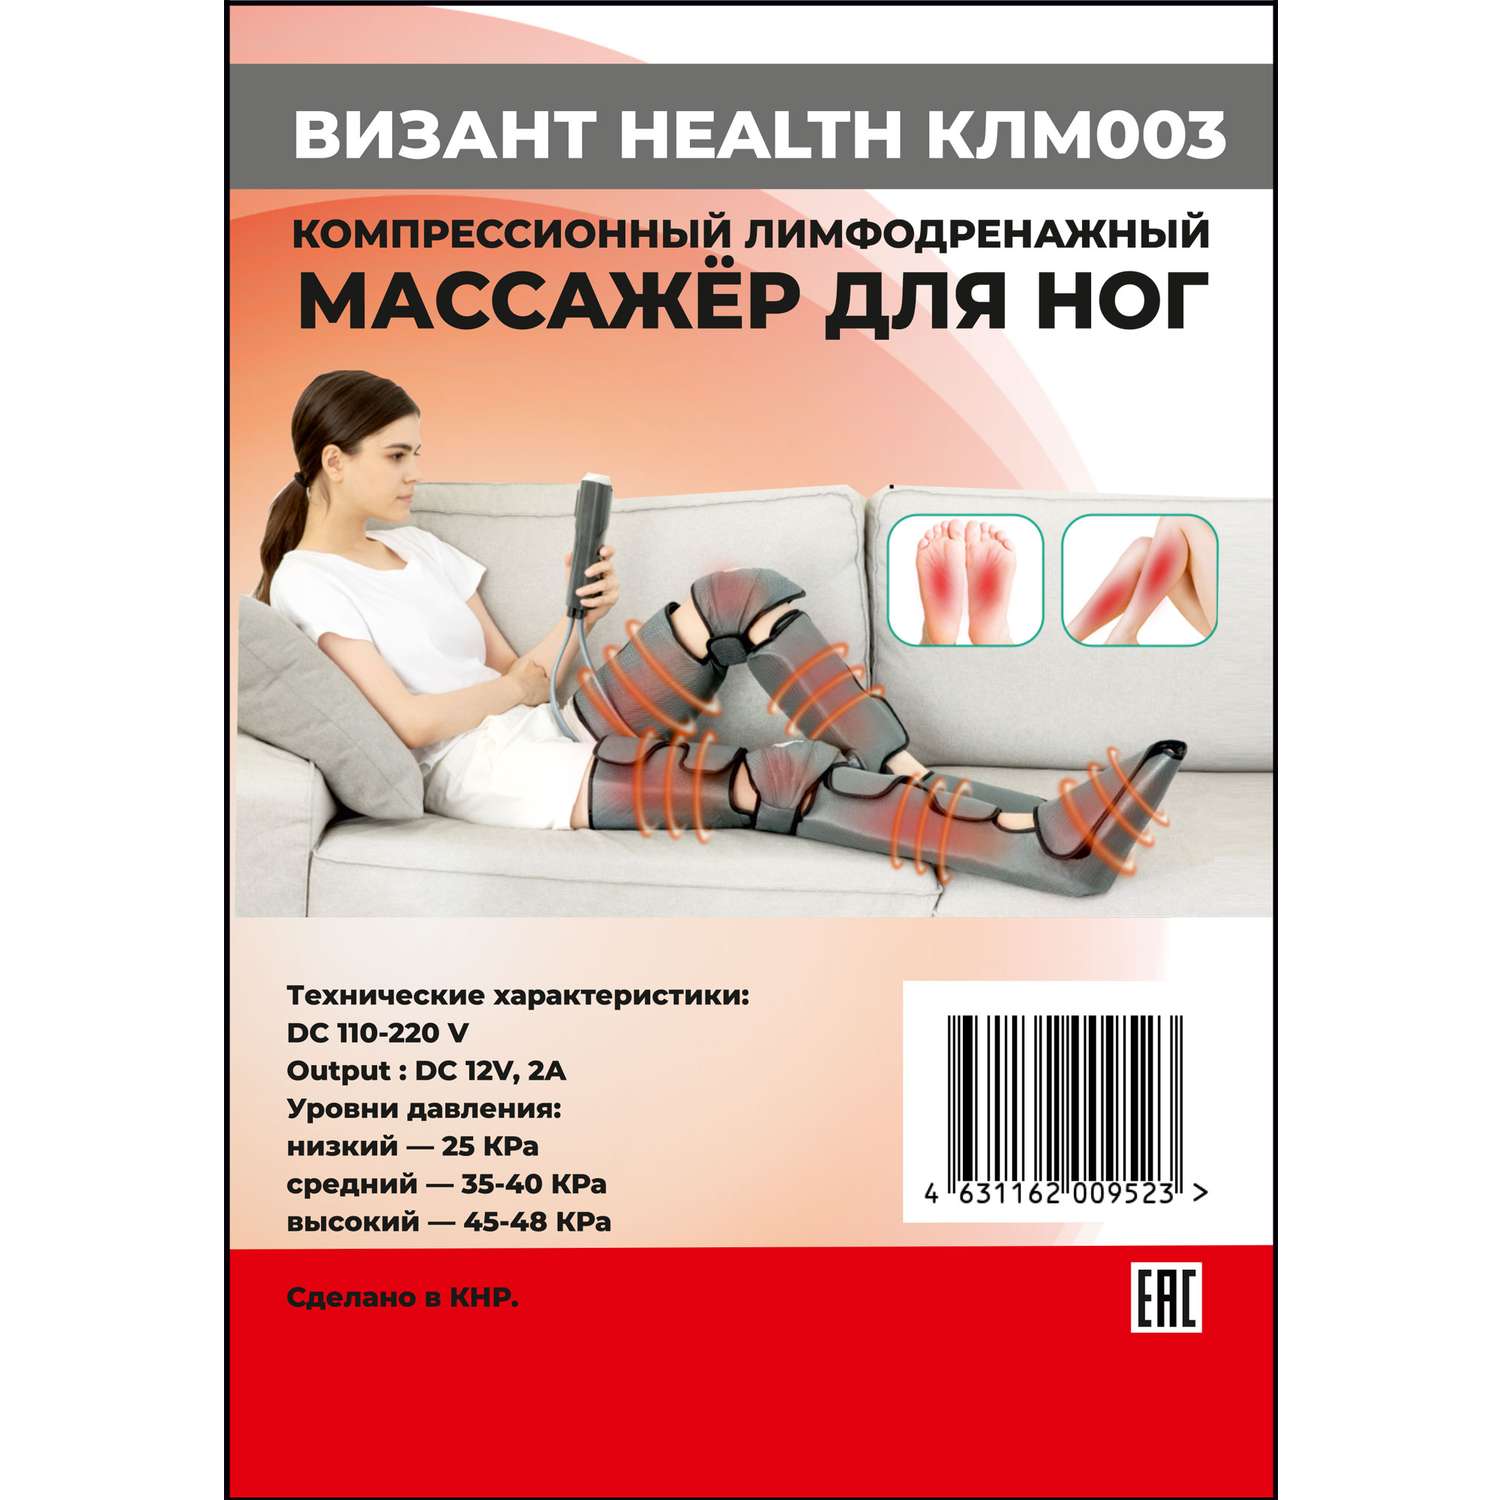 Компресионный для ног Vizant Лимфодренажный массажер для ног HEALTH КЛМ003 - фото 12